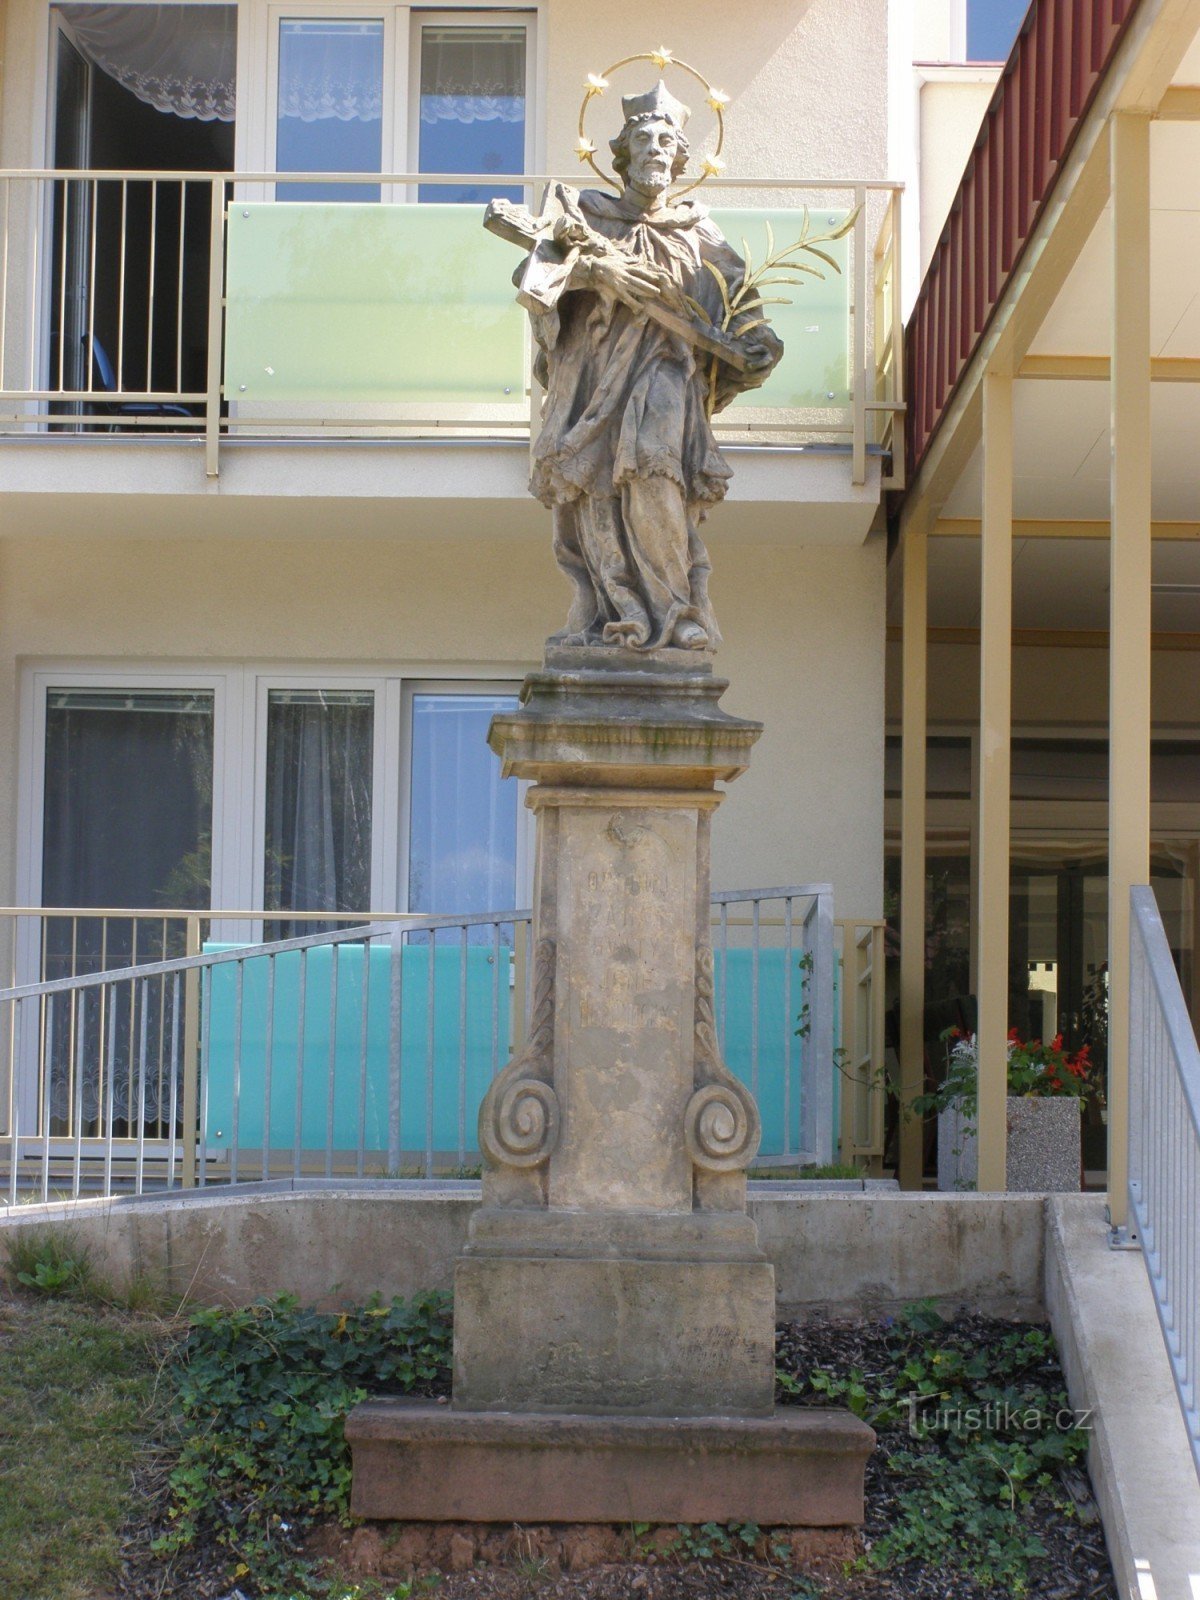 Nová Paka - statuia Sfântului Ioan Nepomuk